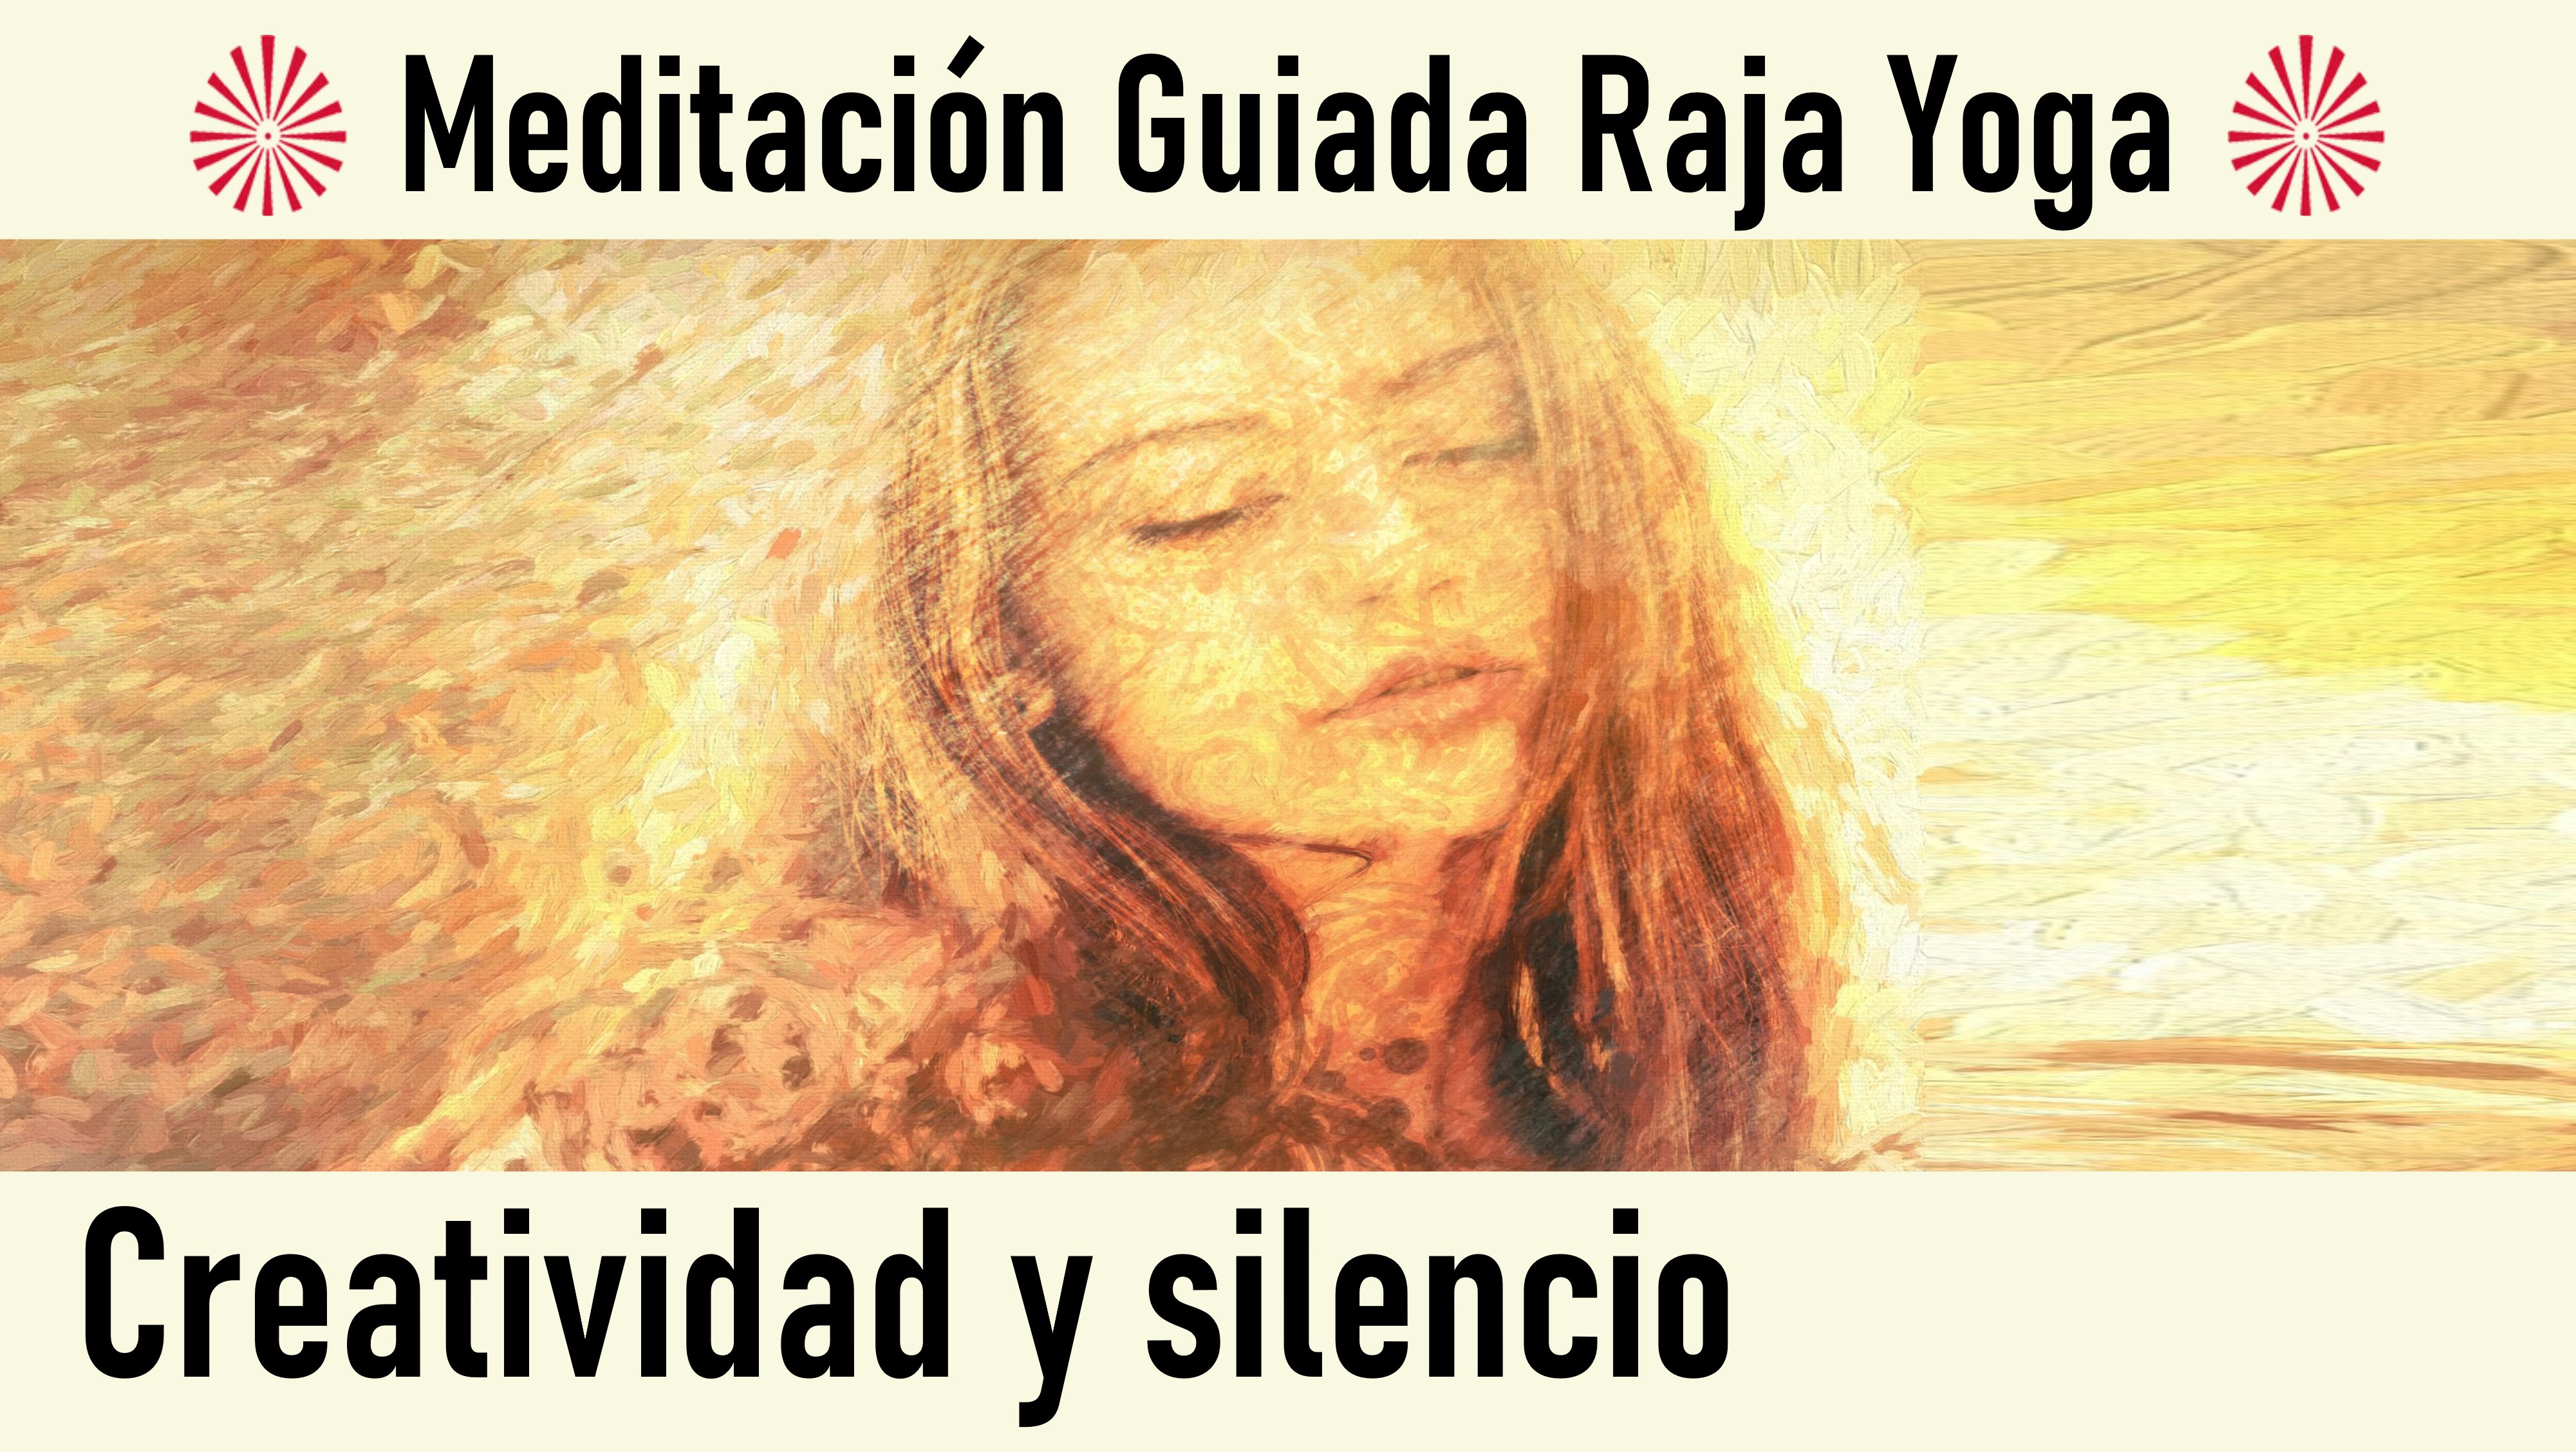 Meditación Raja Yoga: Creatividad y silencio (7 Agosto 2020) On-line desde Madrid